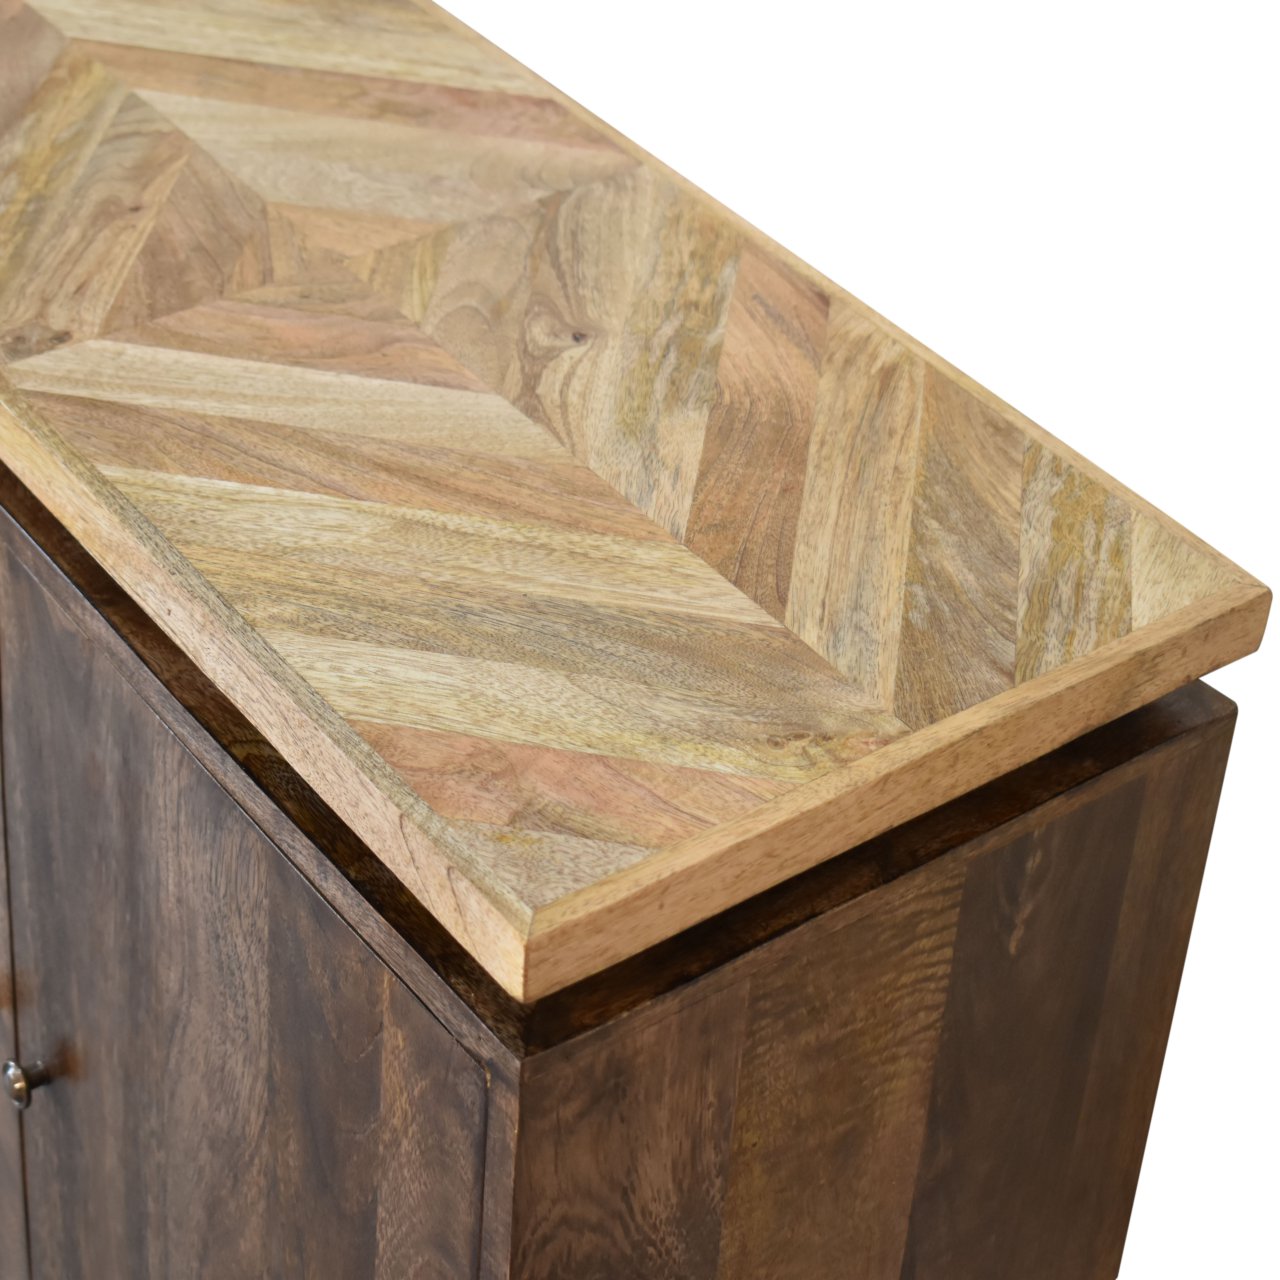 Platform Solid Wood Cabinet